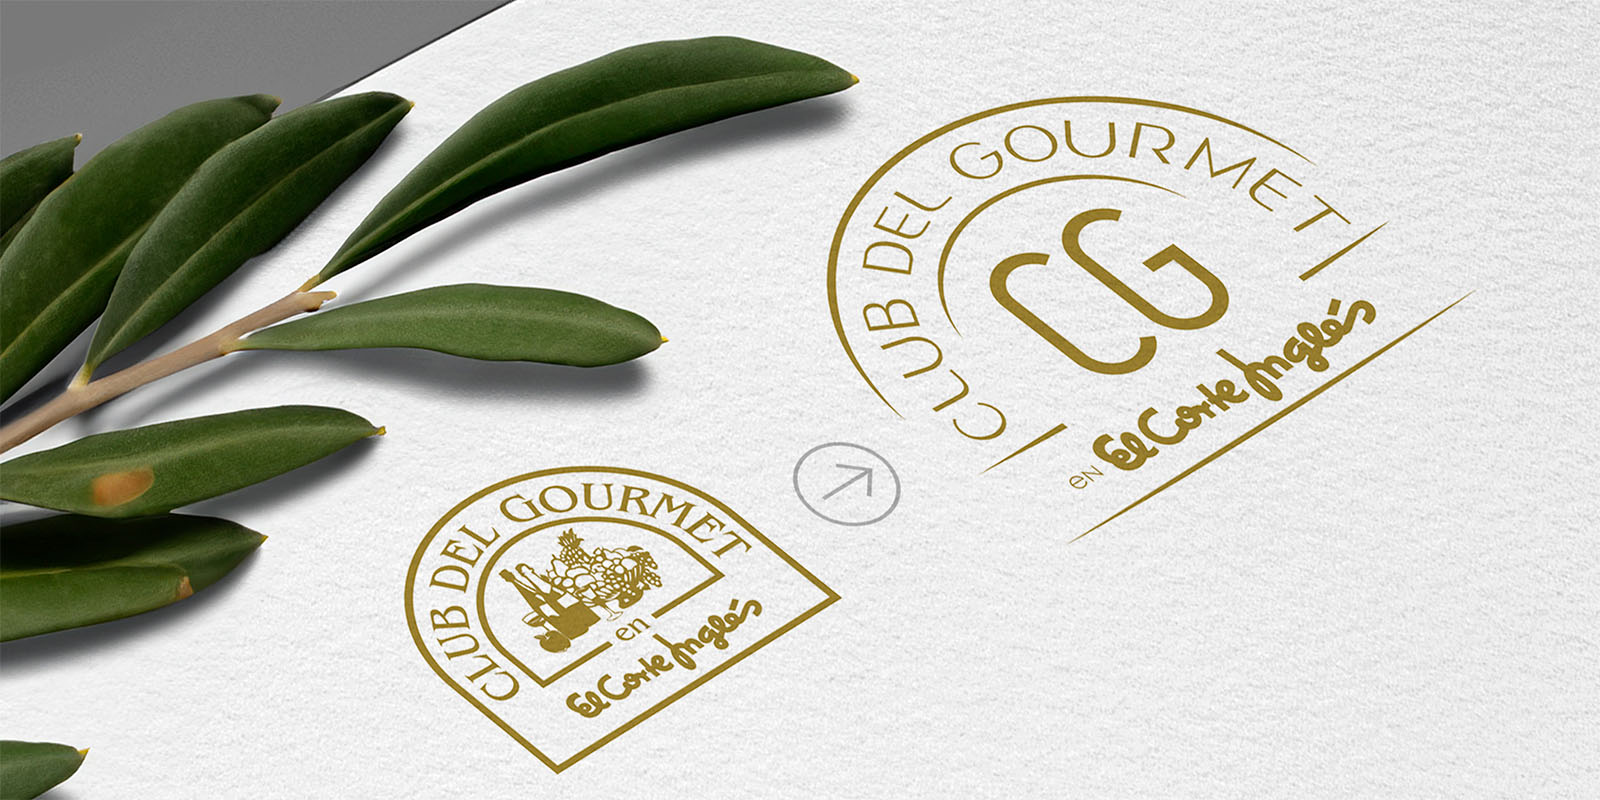 Club del Gourmet: Antes y después del rediseño de logo. Logos en dorado sobre papel blanco. Uno circular con ilustración detallada y texto, el otro más moderno con las iniciales ‘CG’ al centro. Ambos indican la asociación con El Corte Inglés.